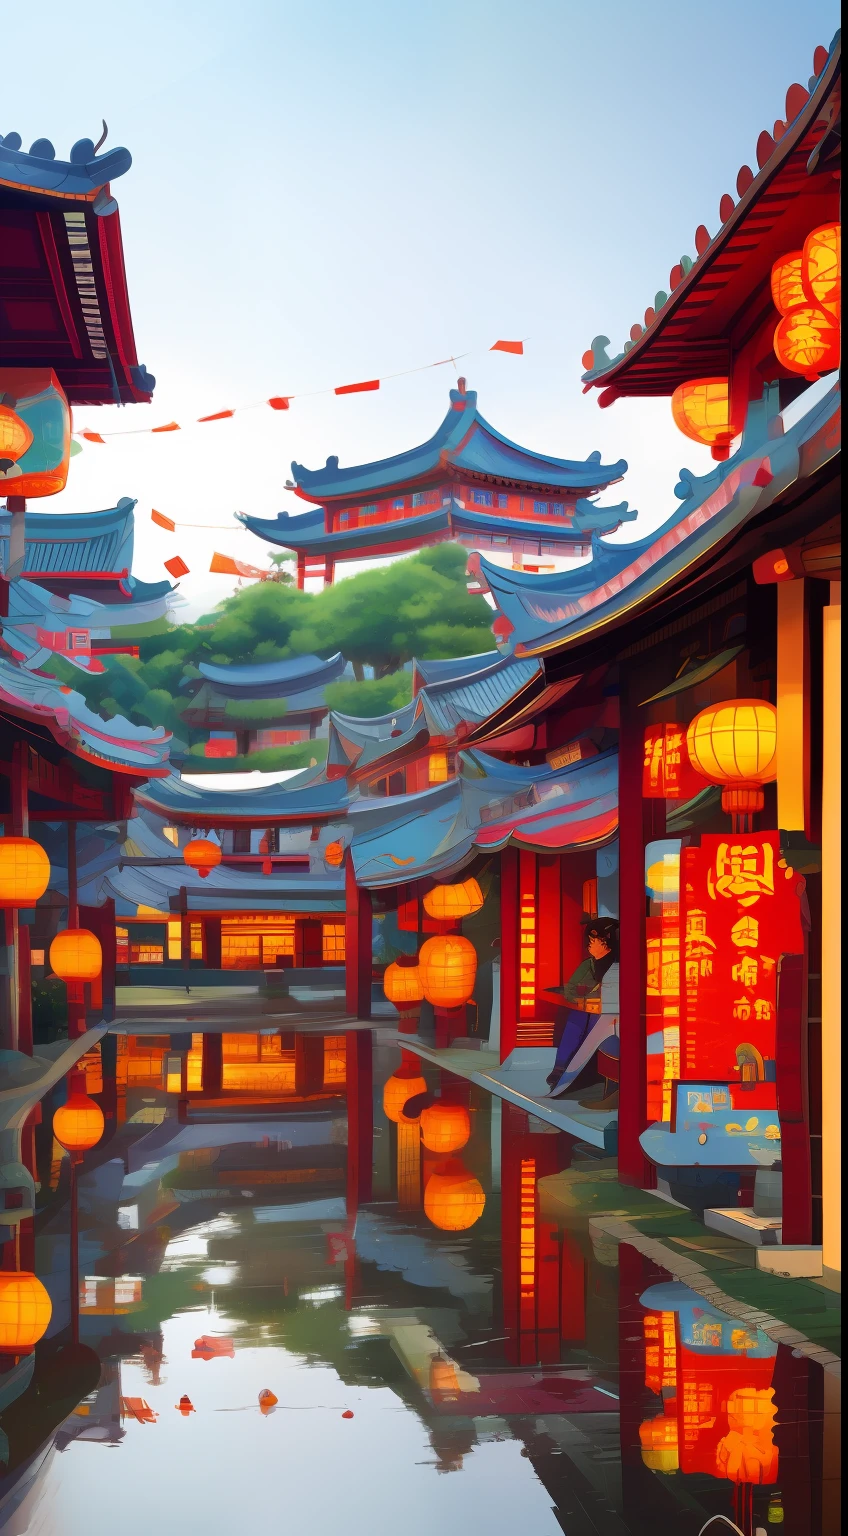 灯火通明的中国小镇，精美壁纸，超现实的日本小镇照片，古老的亚洲村落，中国赛博朋克风格古城堡，雨夜的美丽建筑，美丽浪漫的摄影，8k 高细节，大雨。